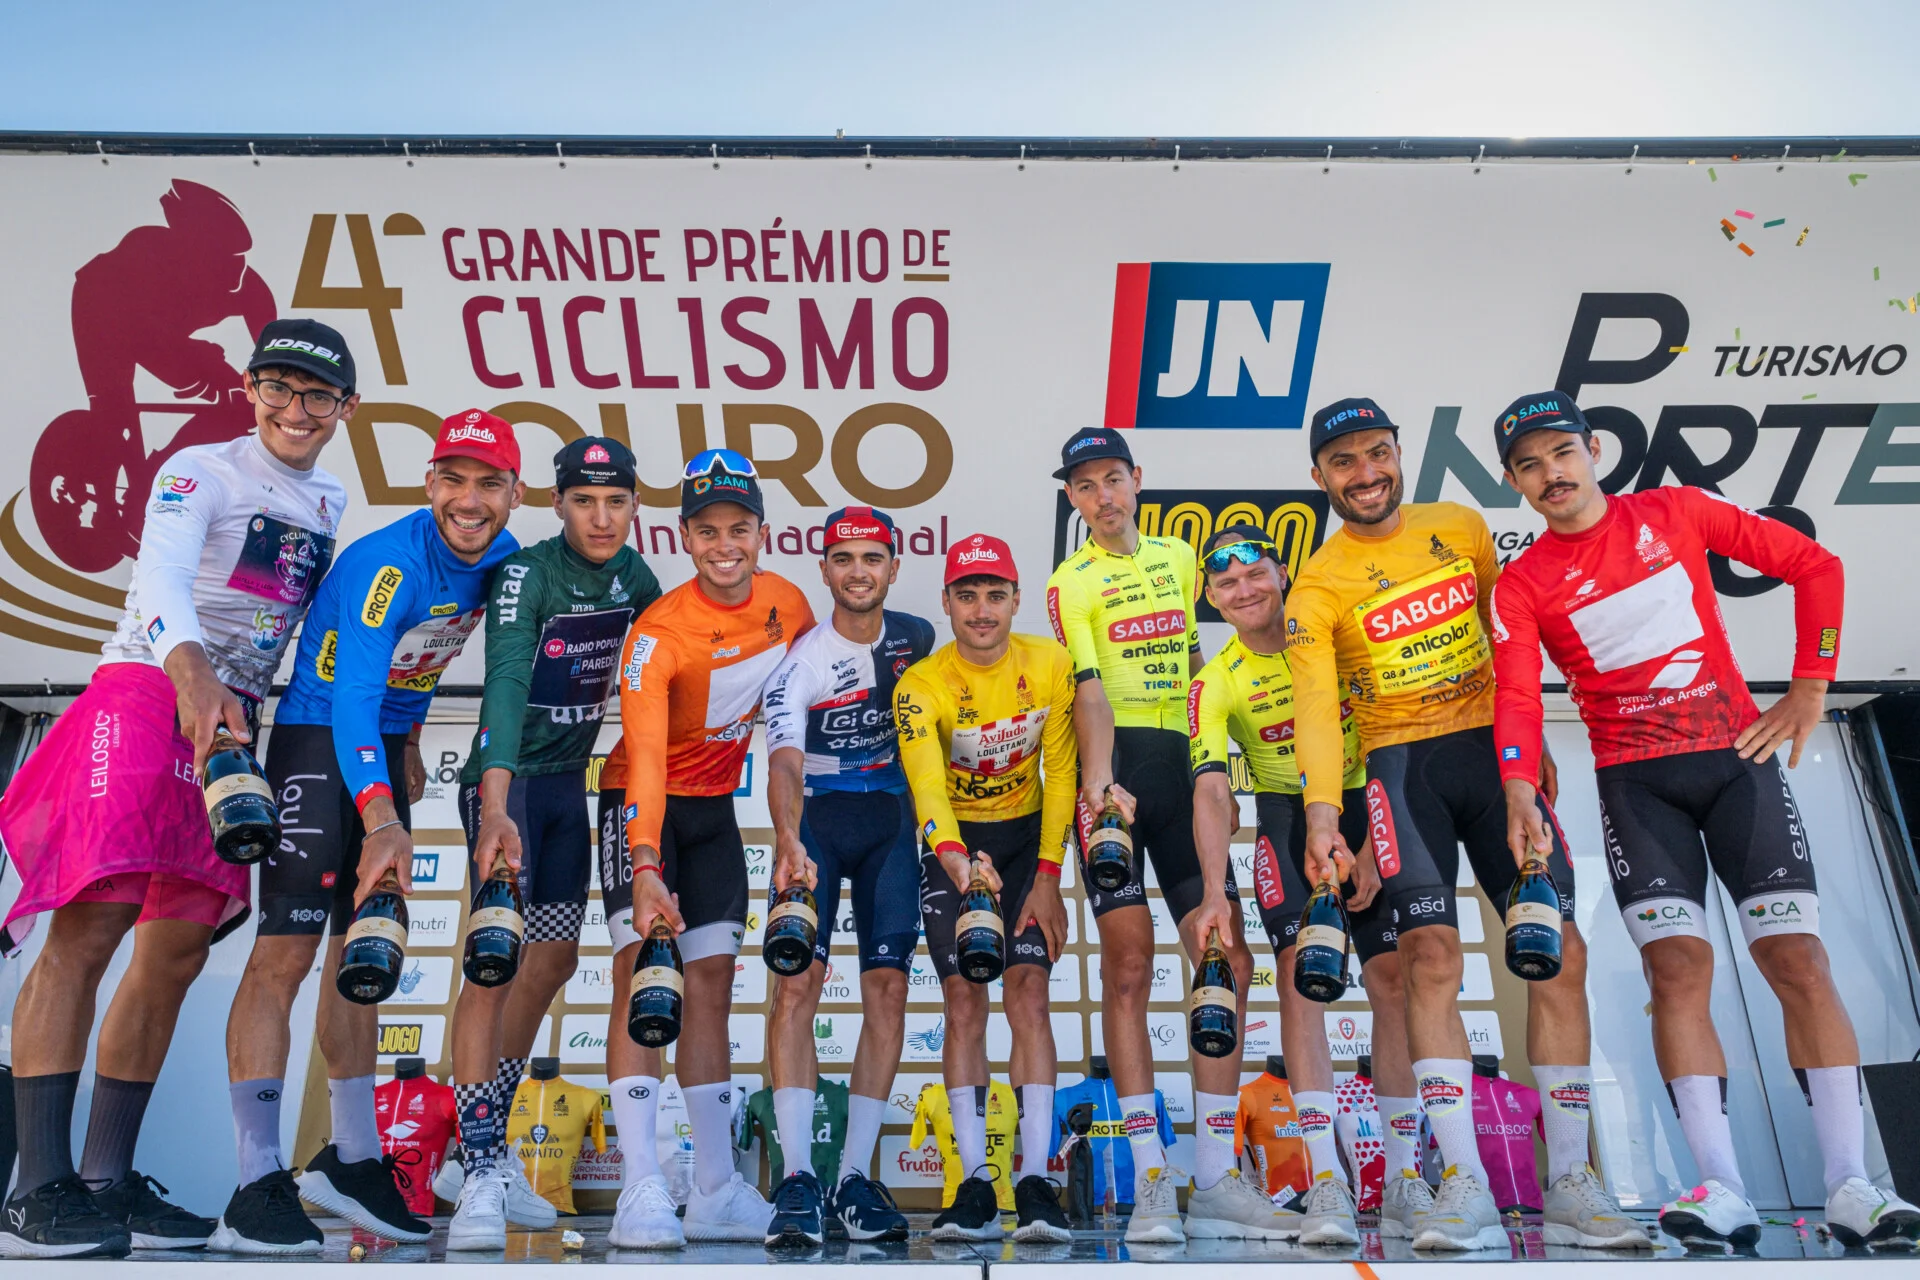 Clube Ciclismo de Tavira - 4ª GP CICLISMO DOURO Internacional - 4etapa -10